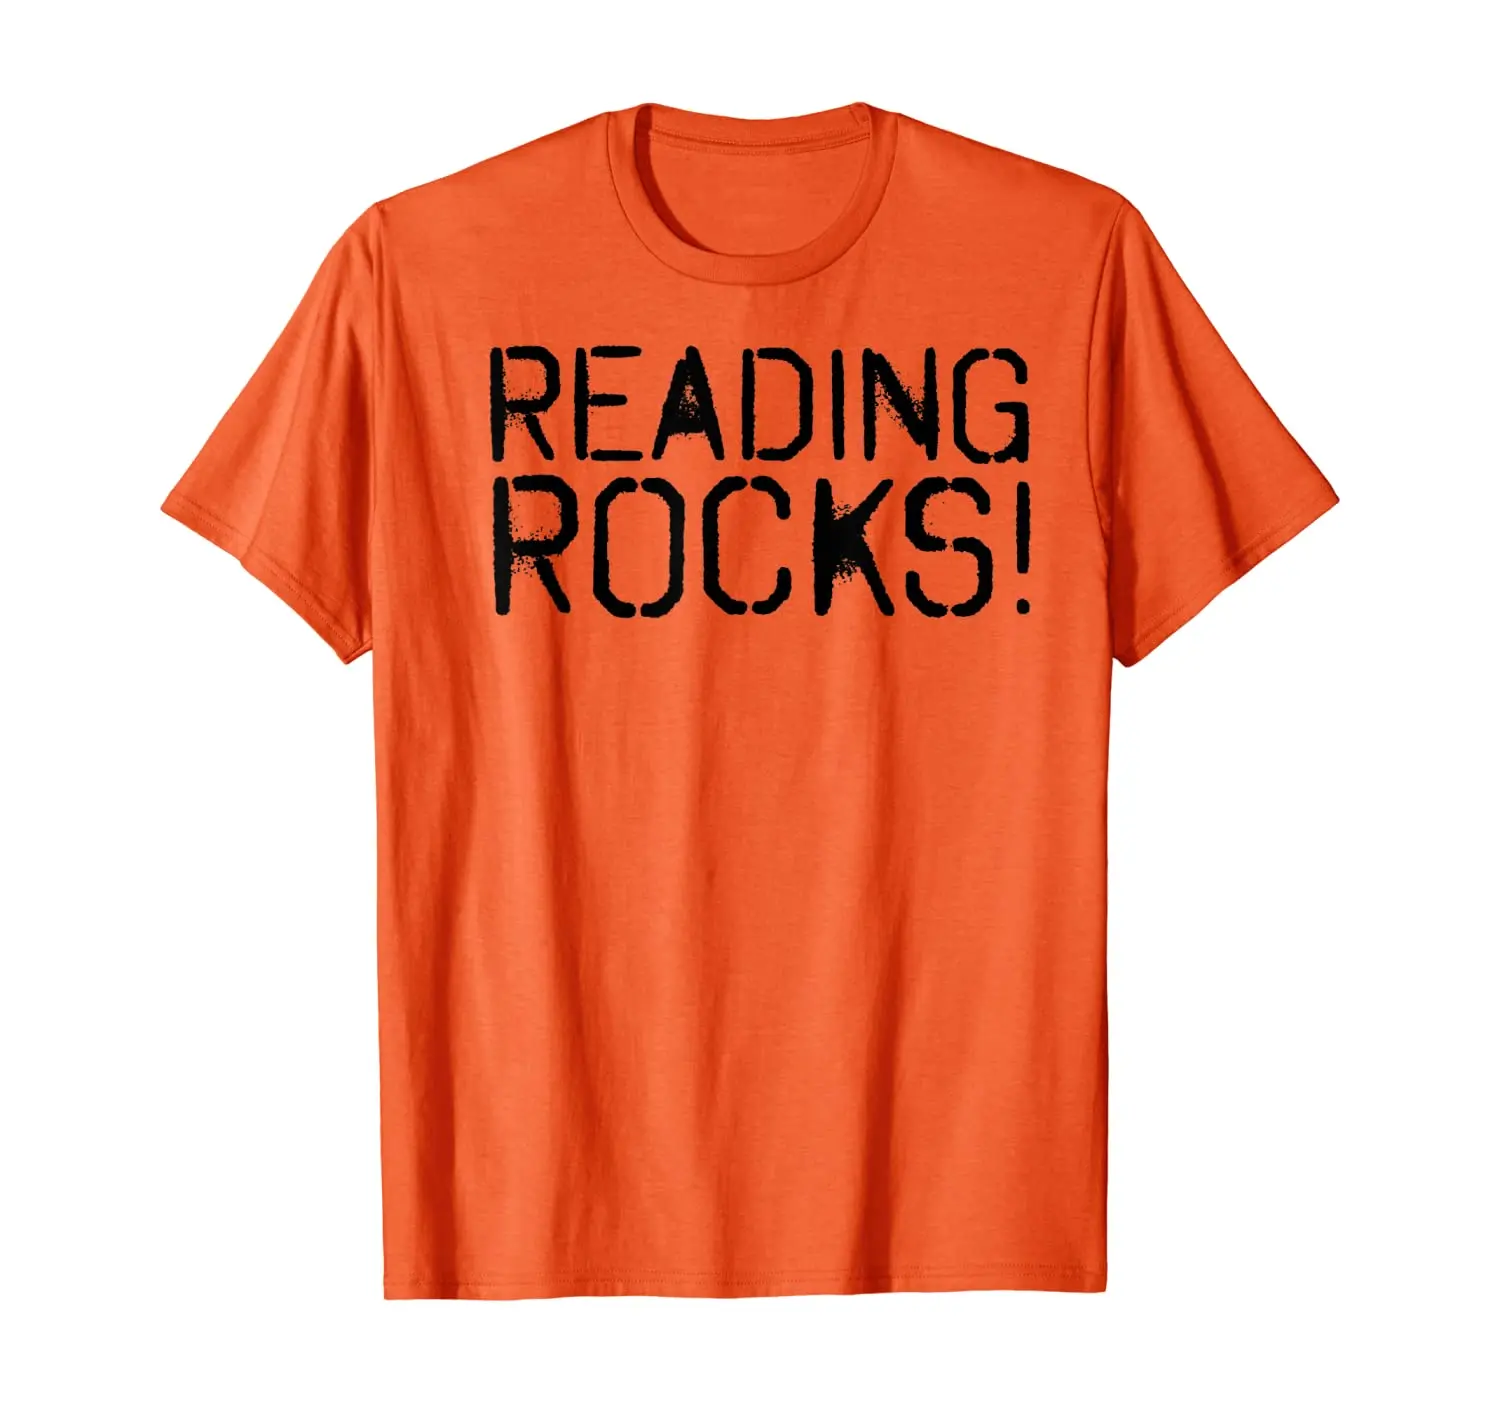 

Забавная футболка для чтения книг, библиотеки, ботаника